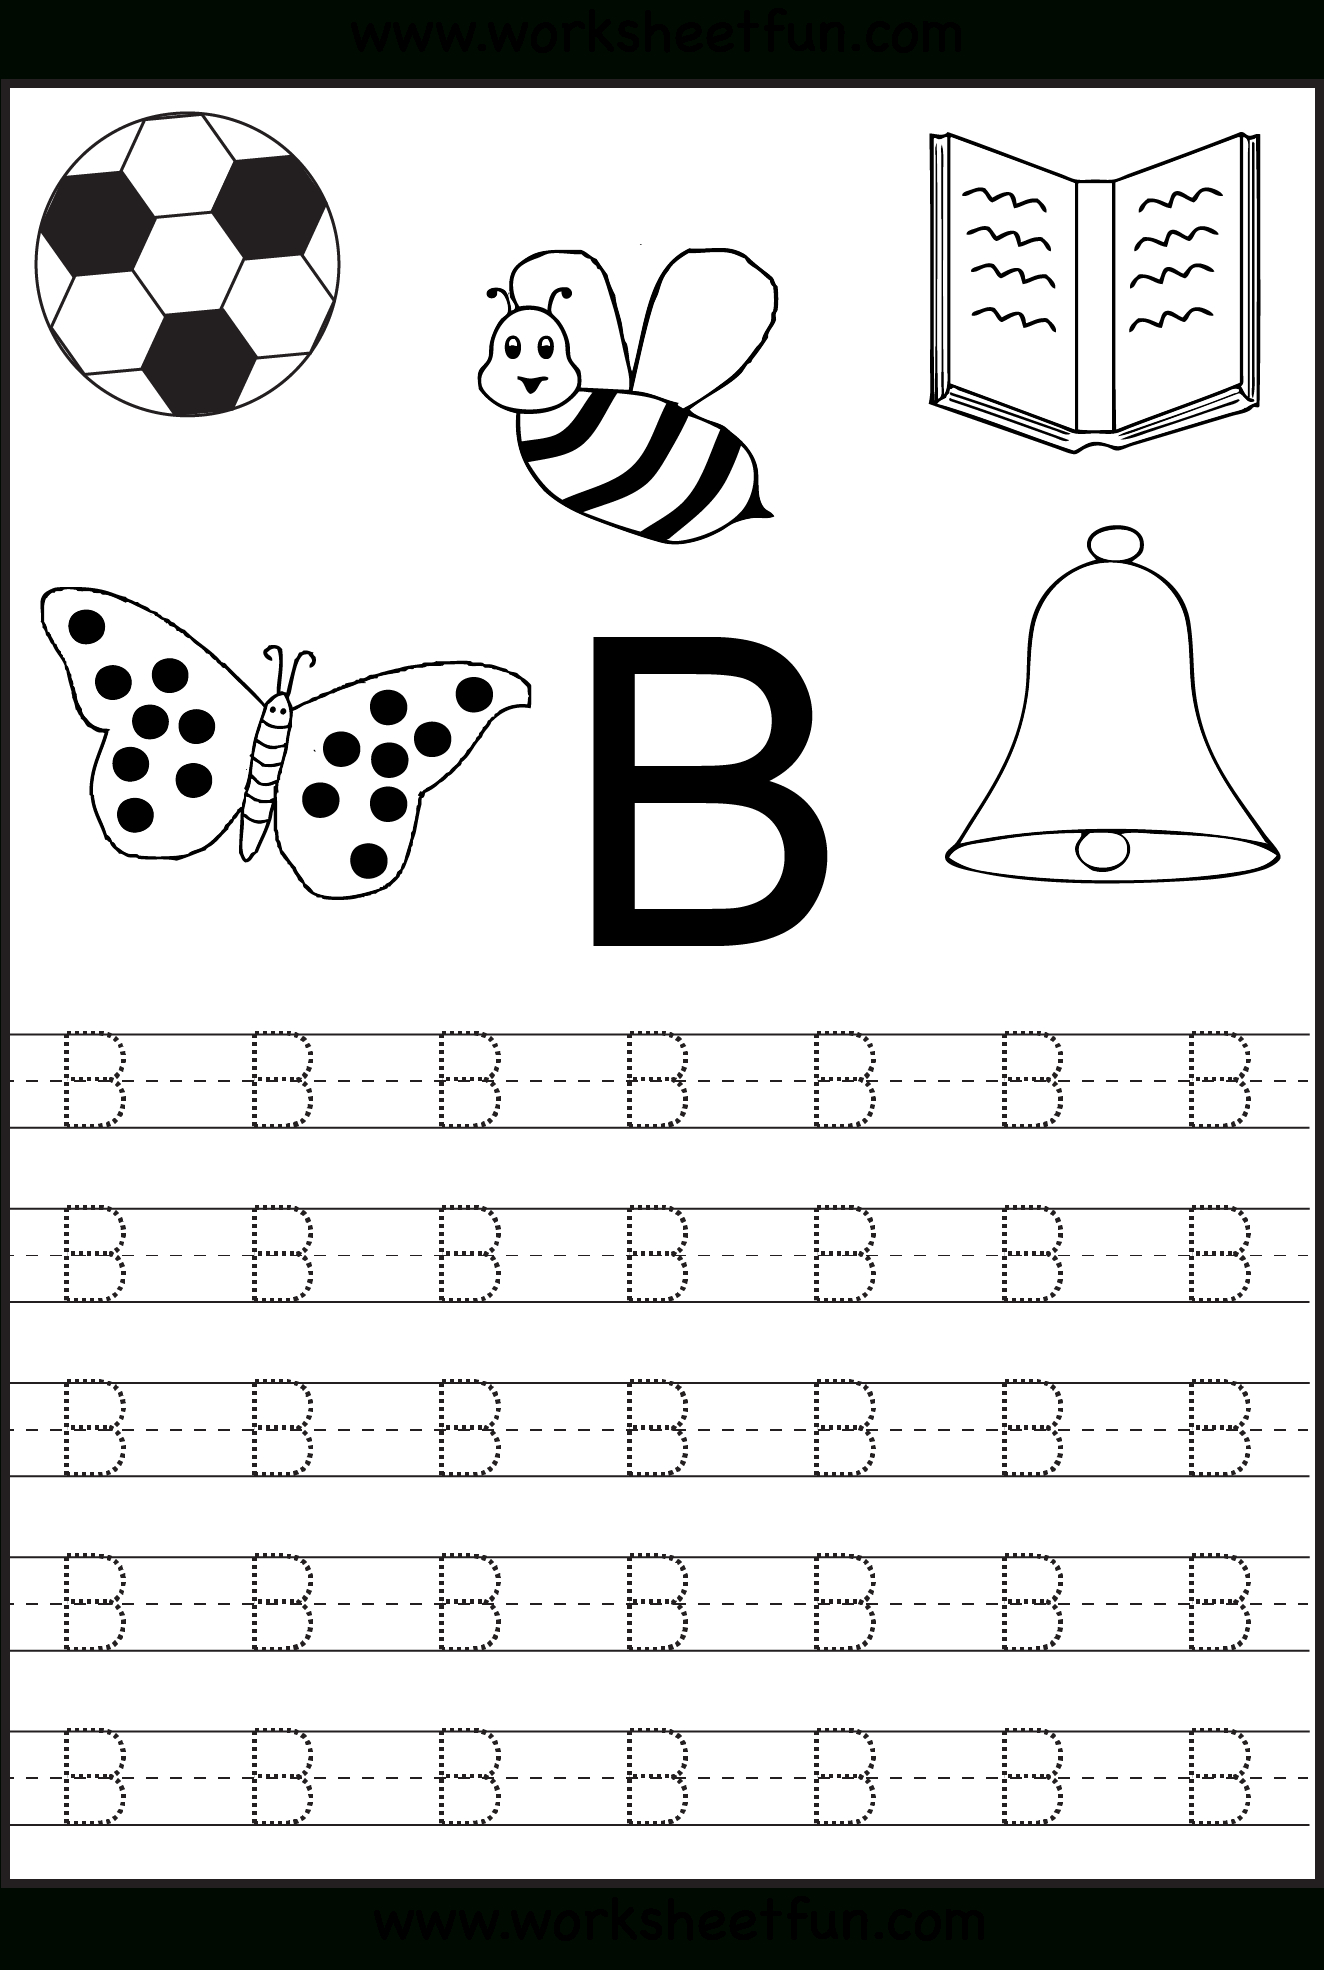 Free Printable Letter Tracing Worksheets For Kindergarten intended for Tracing Letter I Worksheets For Kindergarten